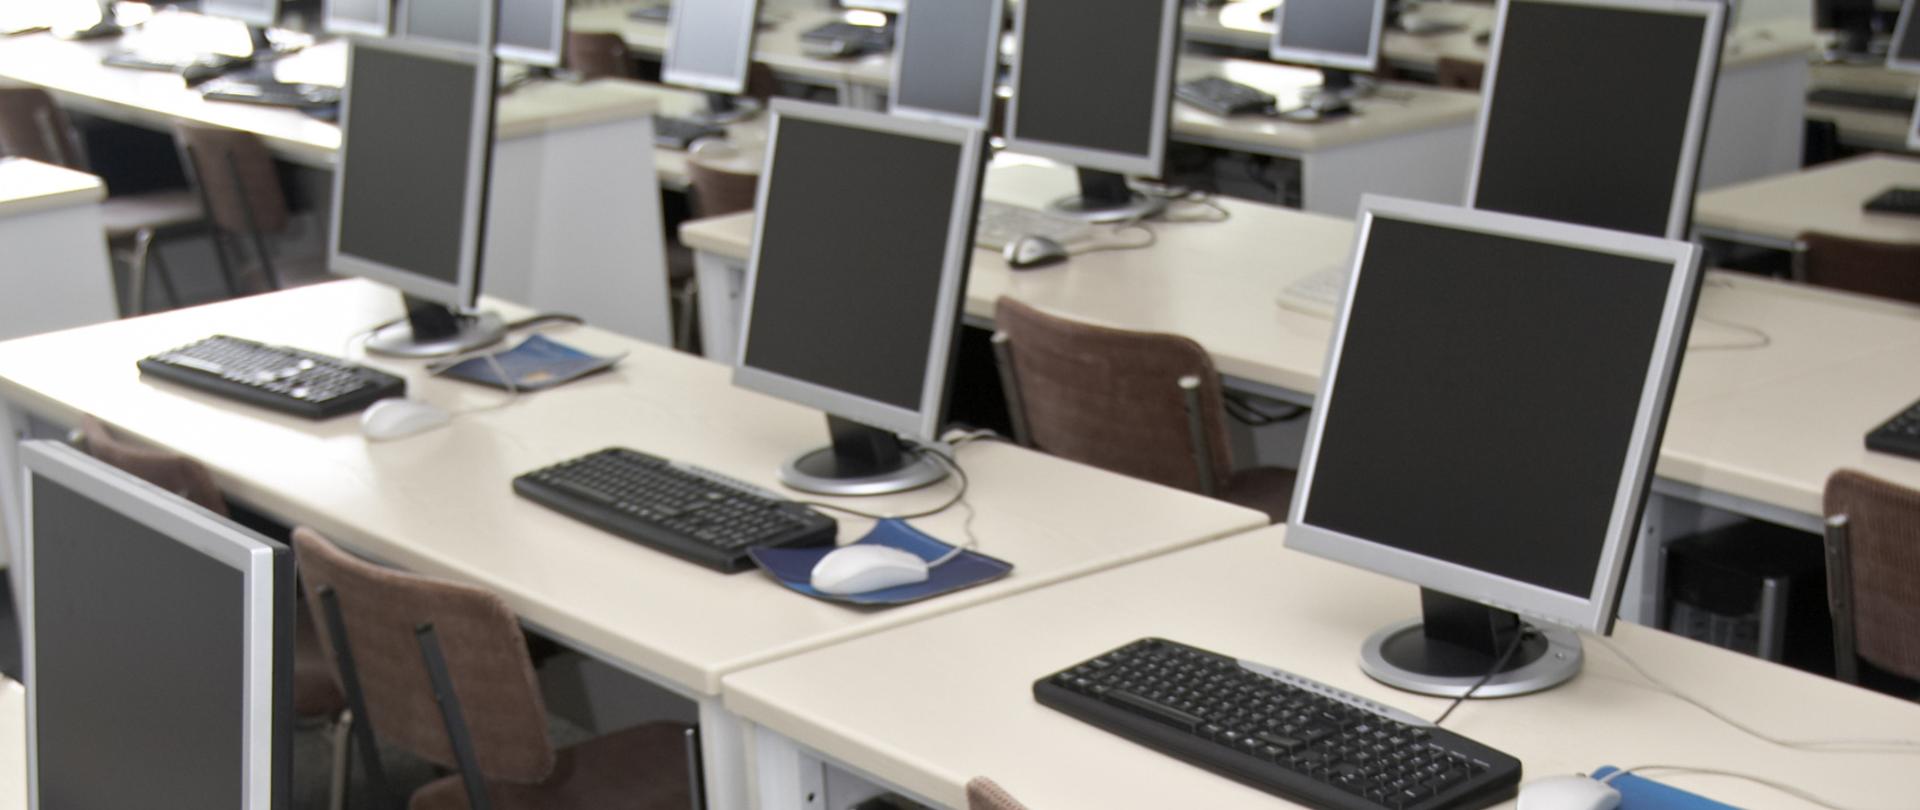 Na zdjęciu widać stanowiska komputerowe w sali lub klasie - biurka a na nich komputery.